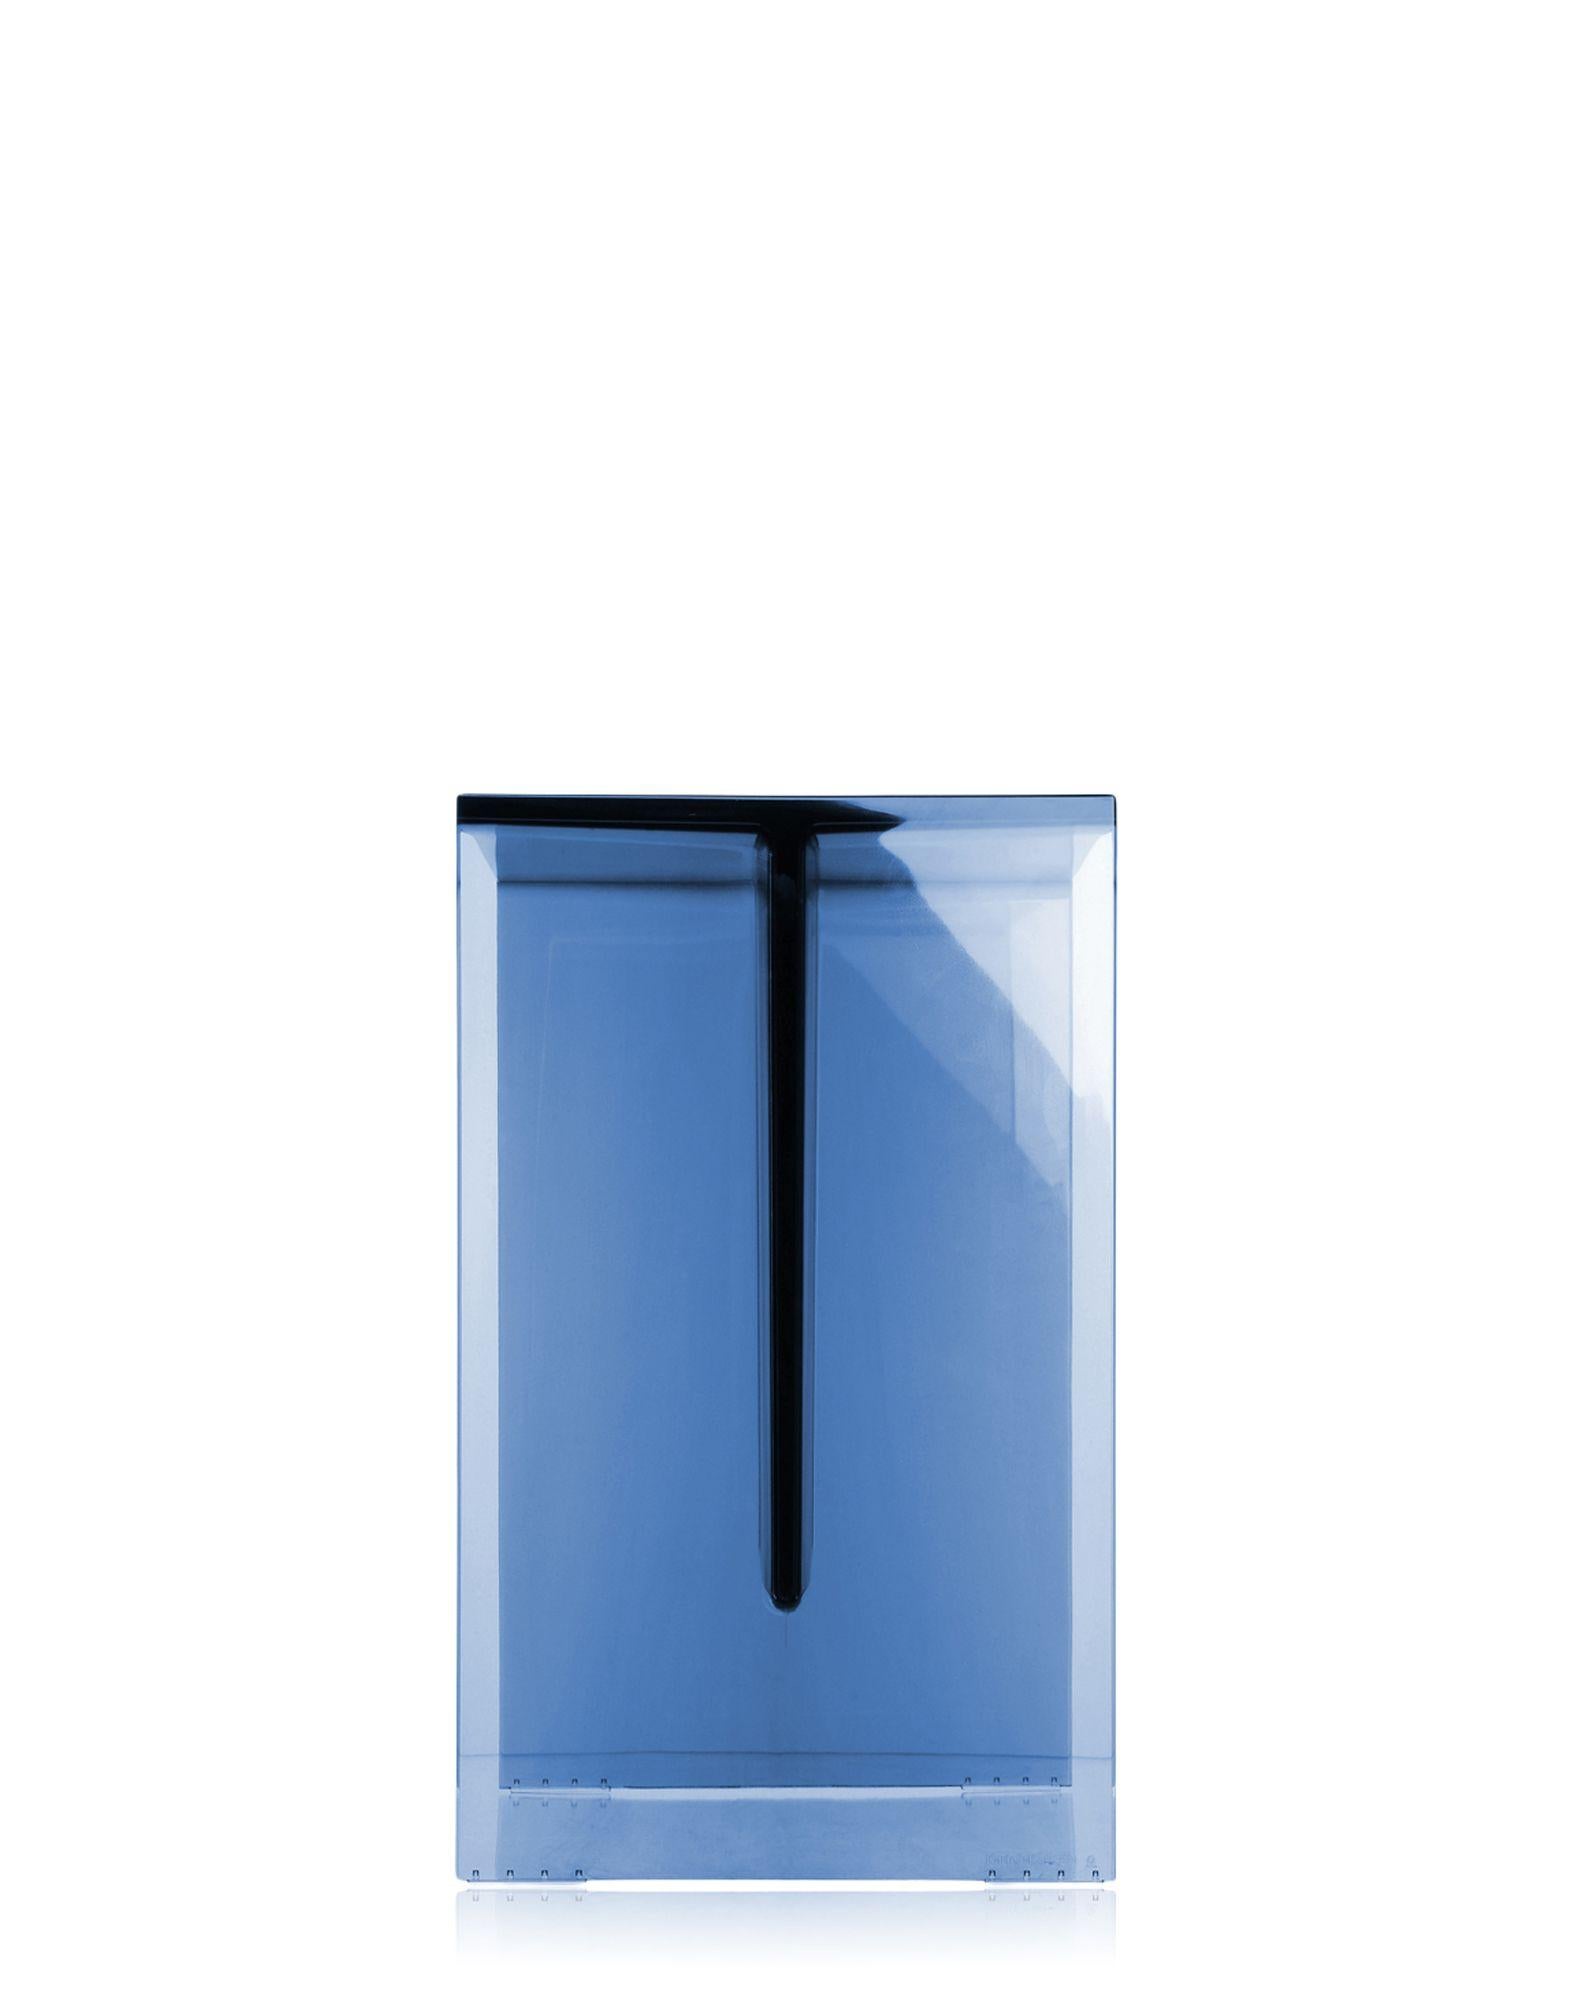 Tabouret/table monolithique en plastique transparent, dont l'épaisseur souligne la pureté géométrique. Un accessoire pratique, fonctionnel et polyvalent, à utiliser partout dans la maison.

Dimensions : Hauteur : 18,5 po ; largeur : 13 po ;